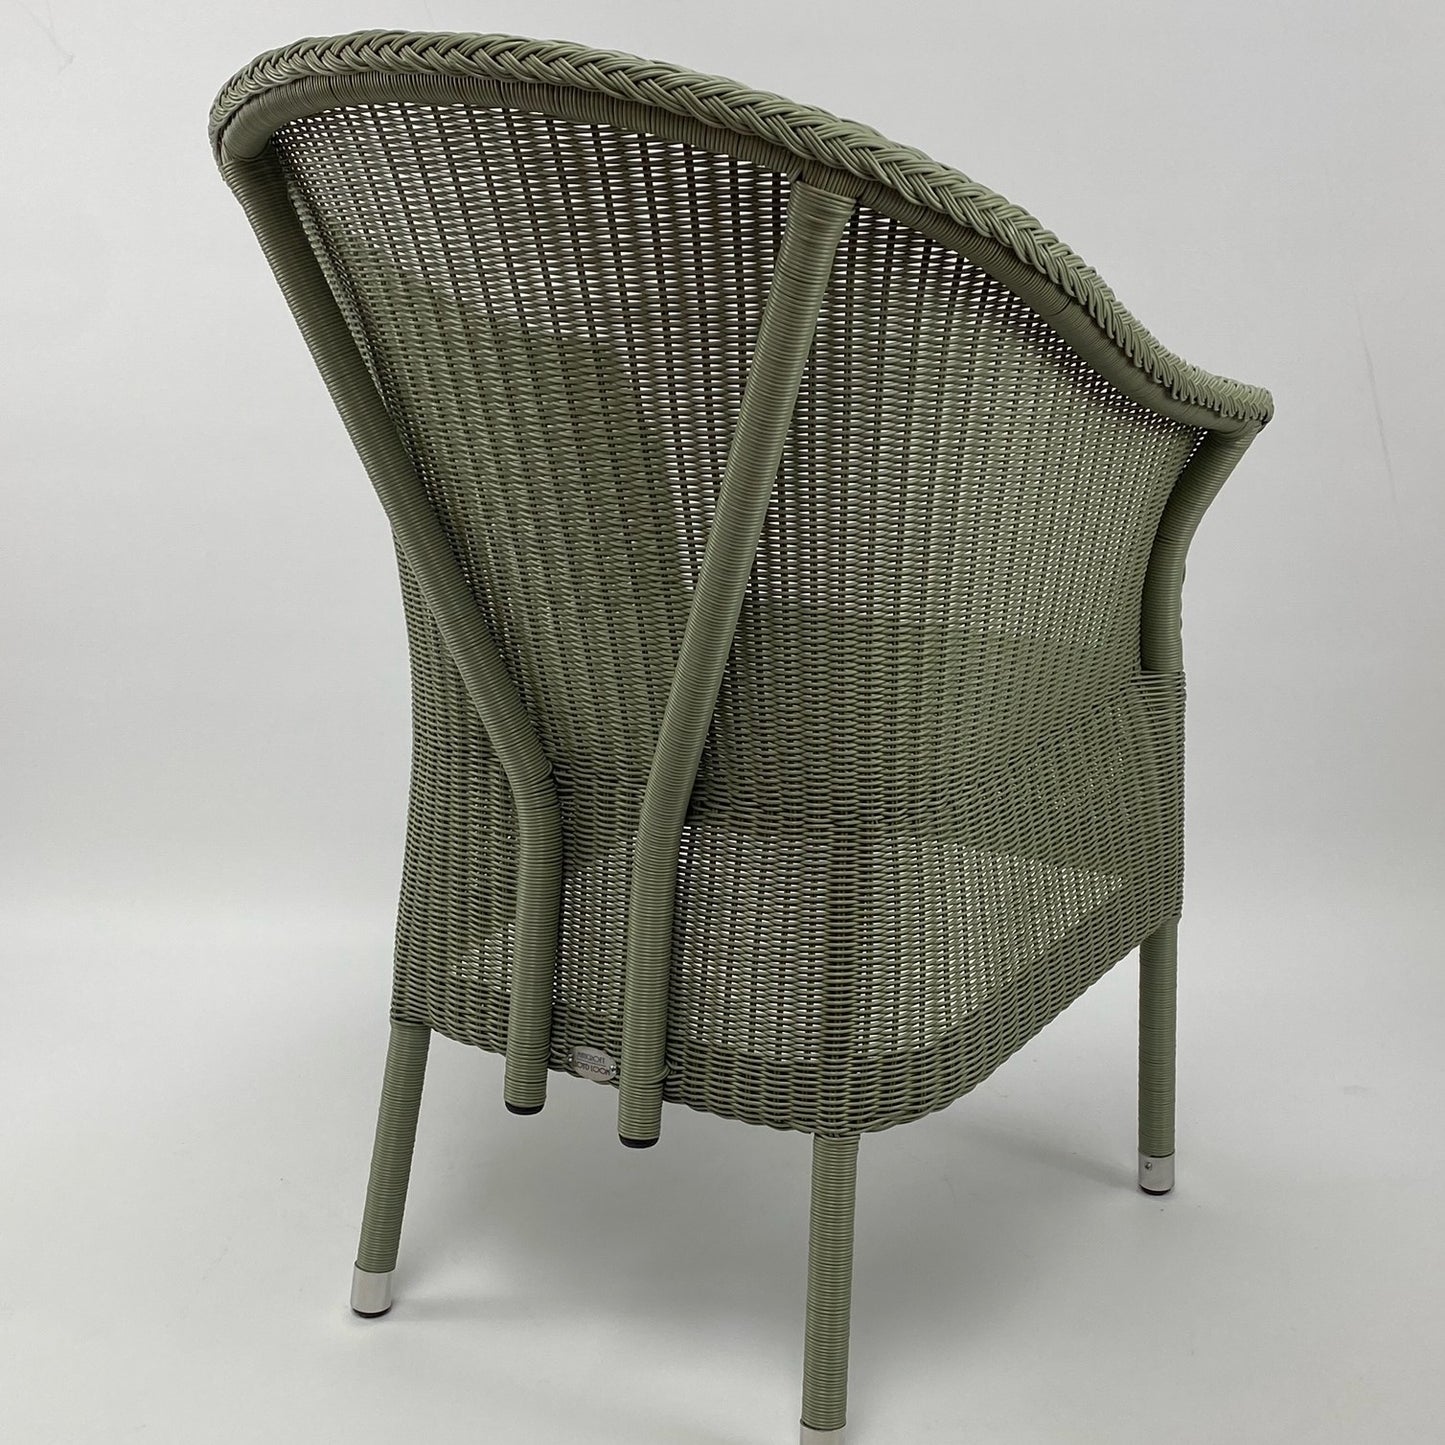 Beverley Outdoor Lloyd Loom Chair -Tea Green